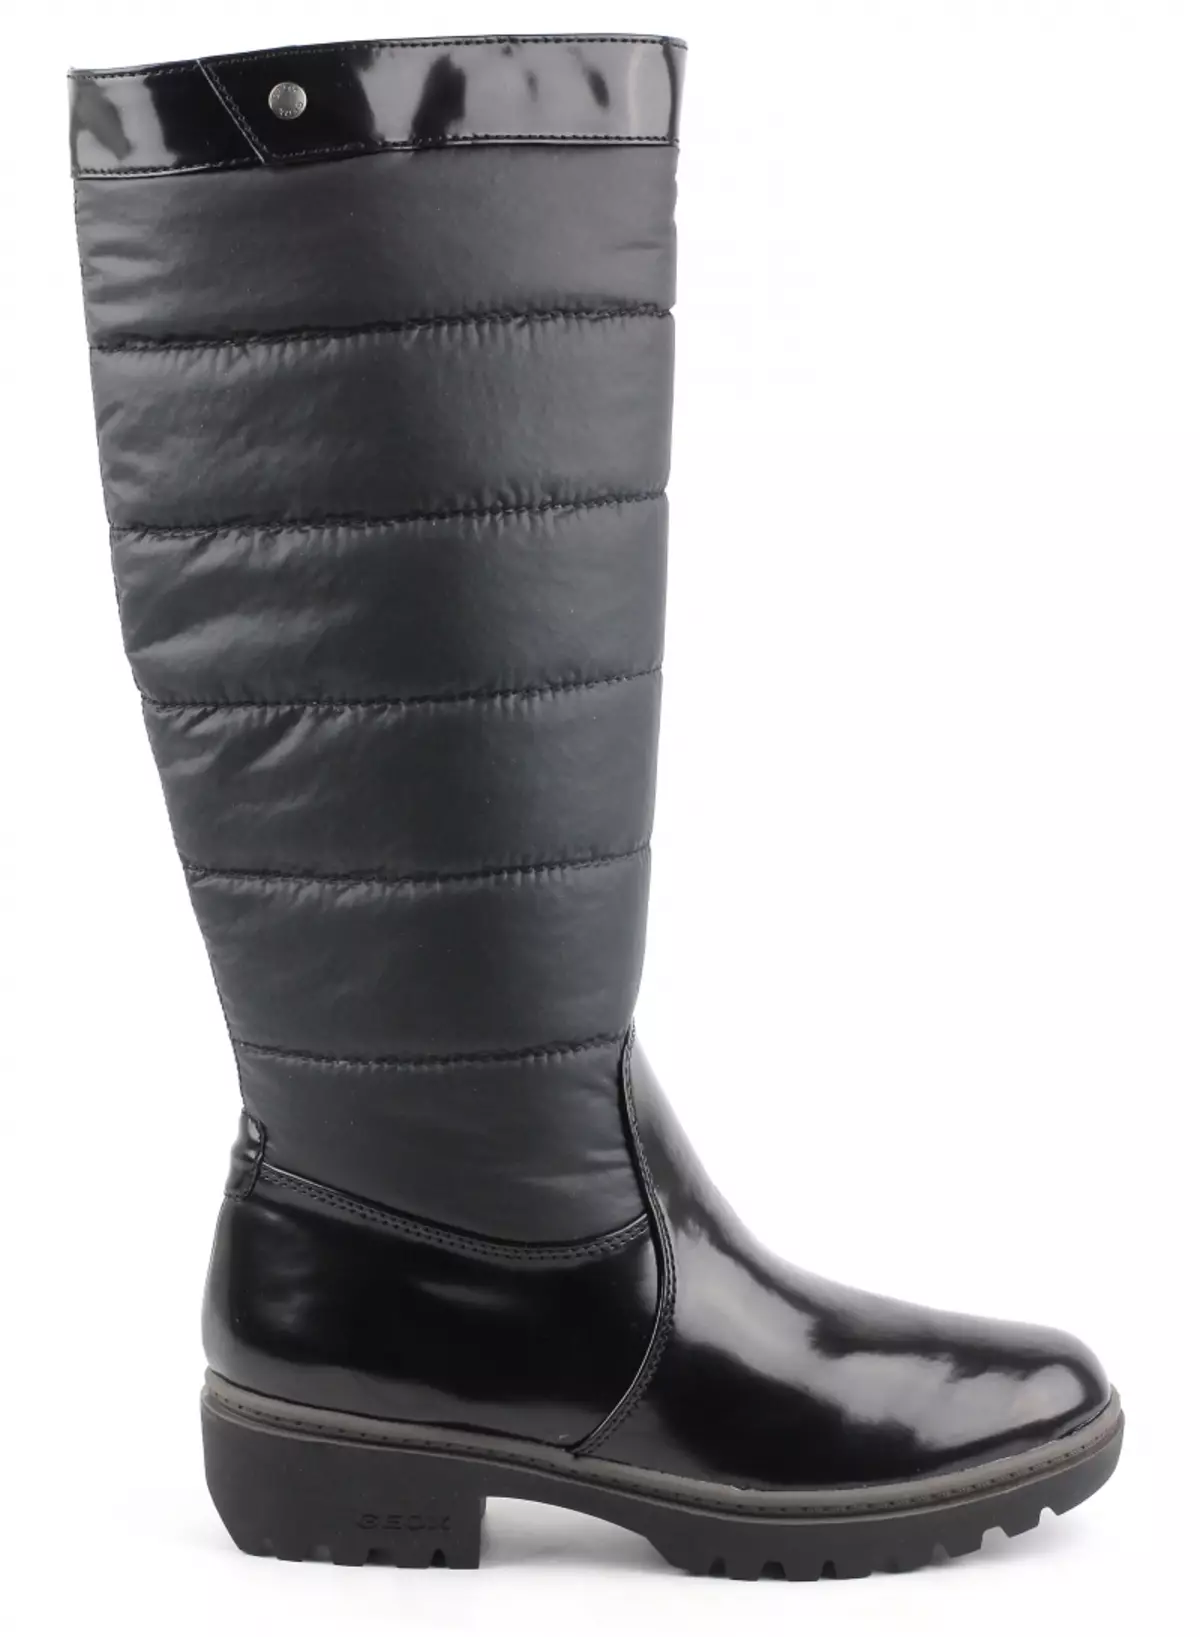 Boots Geox (45 de fotografii): modele de iarnă pentru femei și cizme pentru fete 2108_40